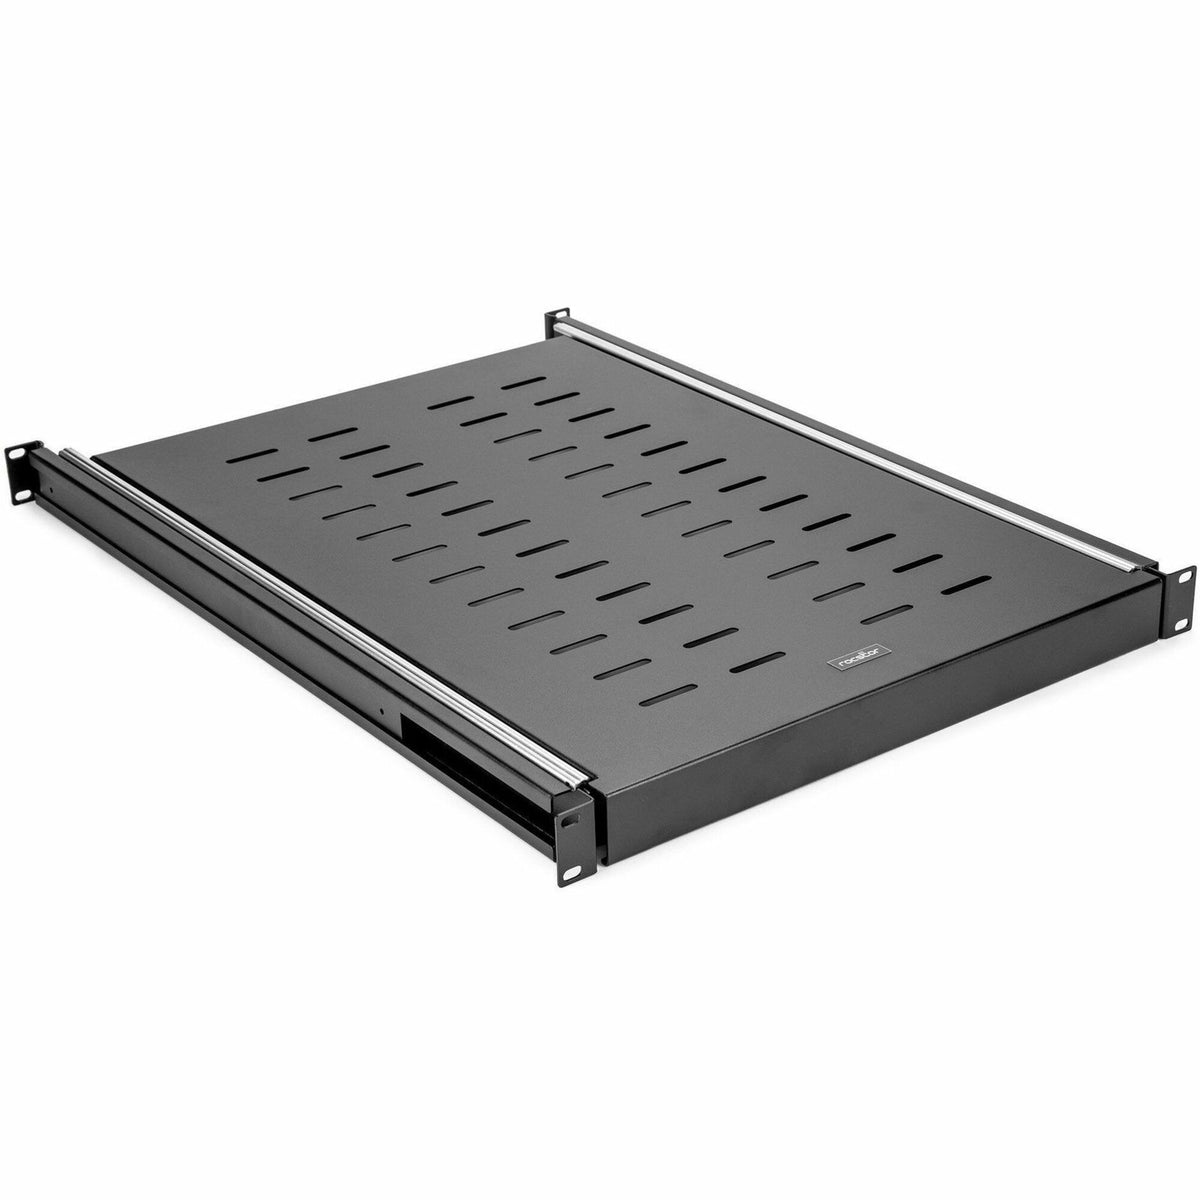 Rocstor 19" Adjustable Sliding Server Rack Cabinet Shelf - Y10E049-B1